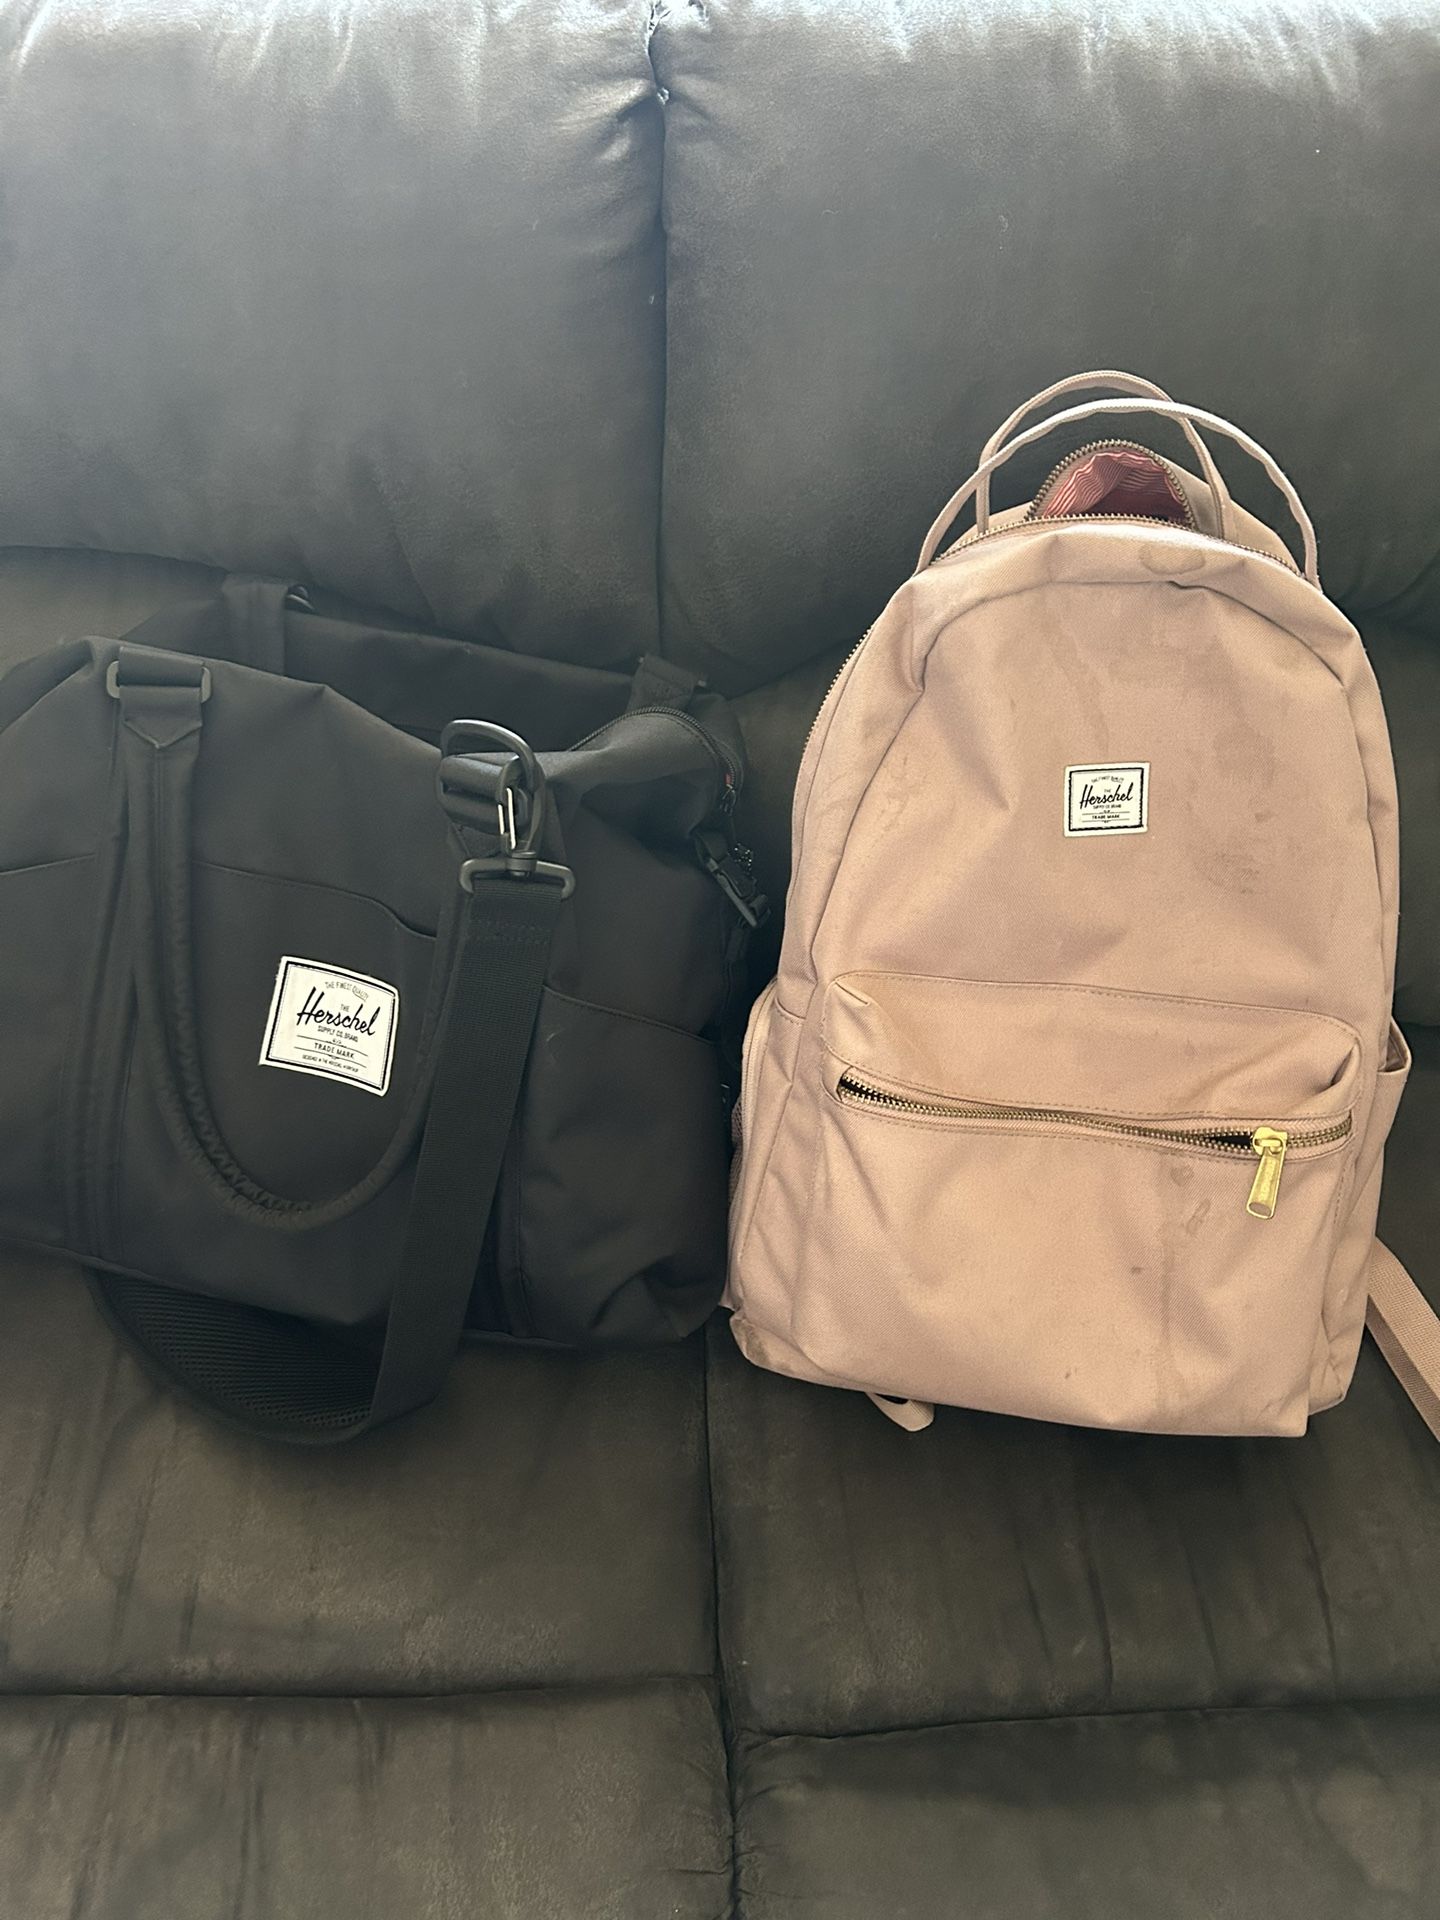 Hershel Diaper Bag/ Backpack